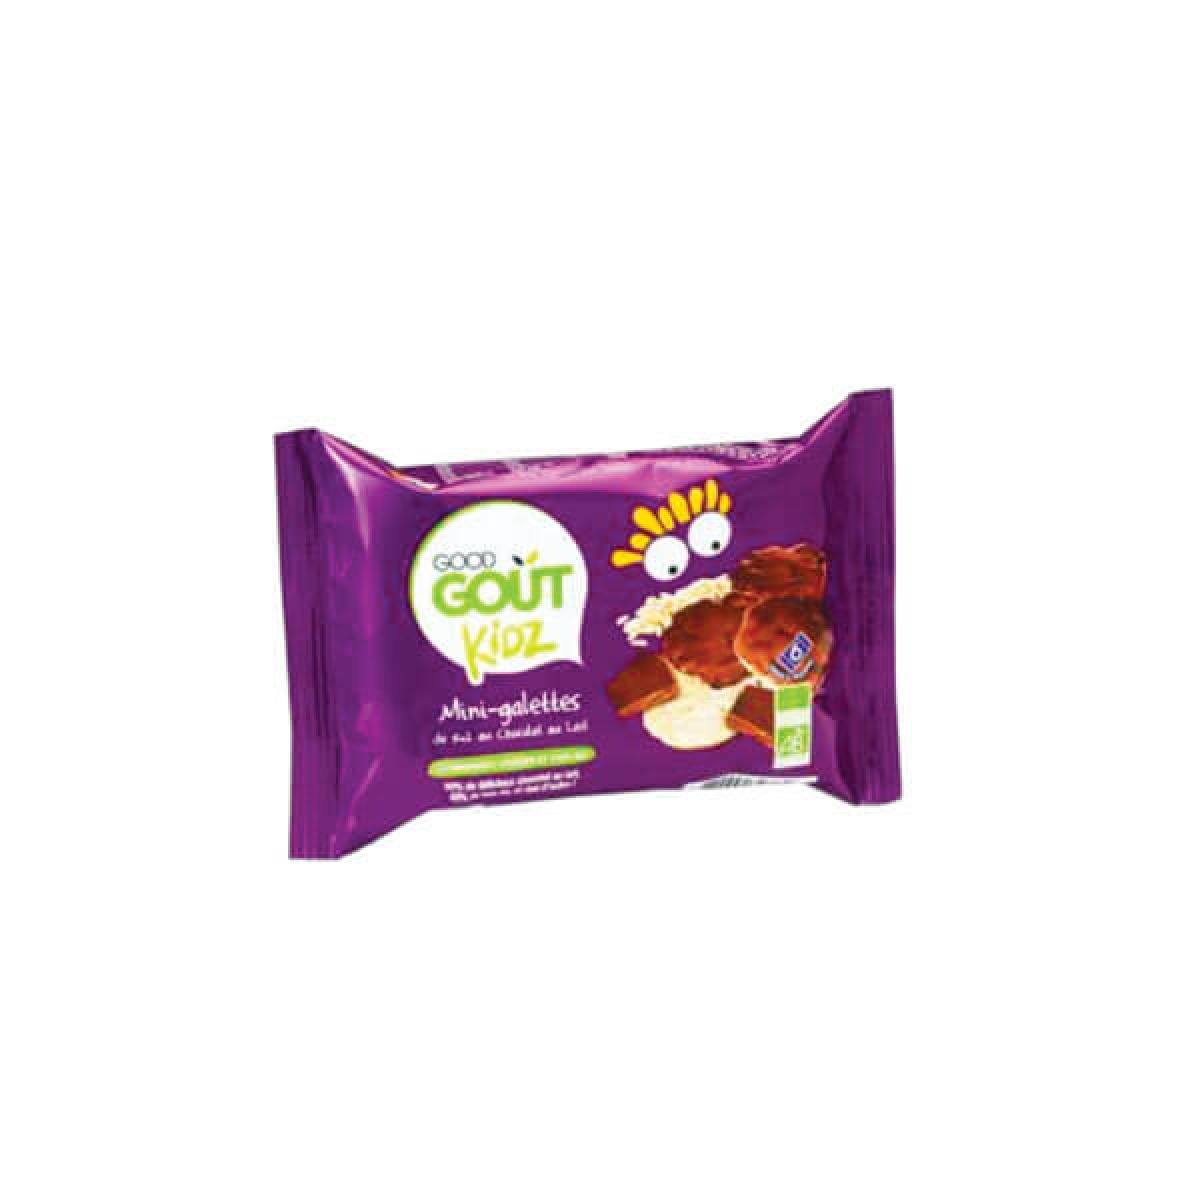 Good Gout Mini Galettes De Riz Chocolat Au Lait 84g Parapharmacie Pharmarket